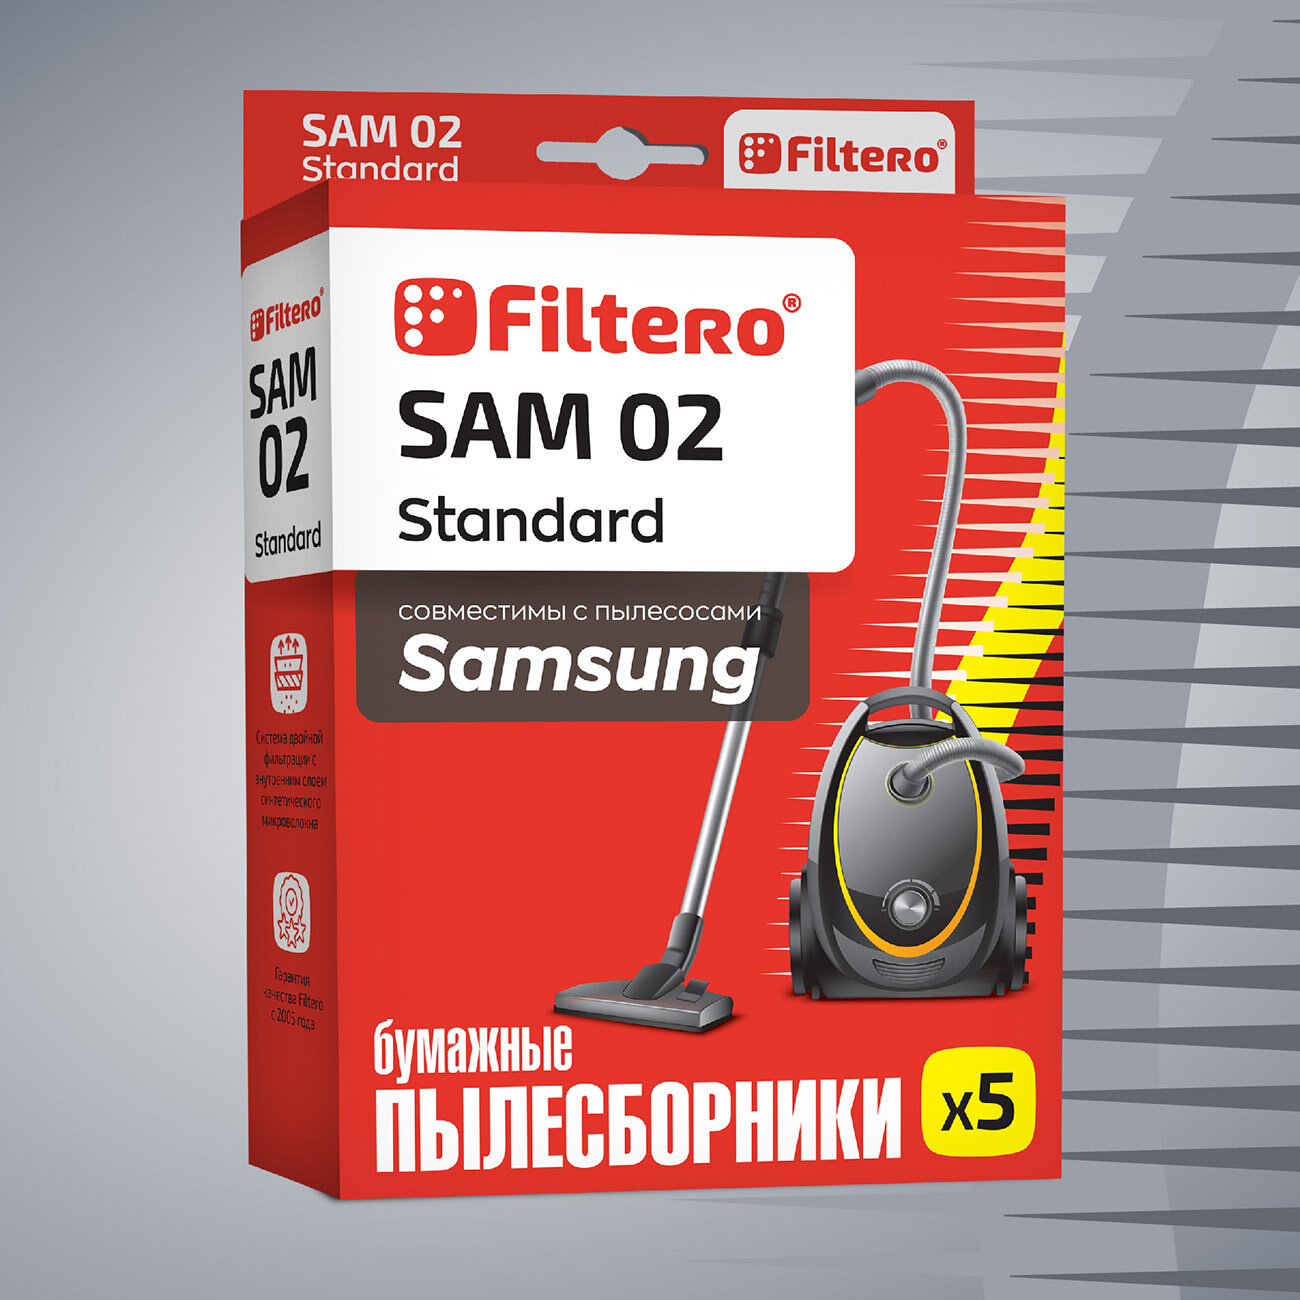 Мешки-пылесборники Filtero SAM 02 Standard для пылесосов SAMSUNG, тип VP-95B, бумажные, 5 шт.